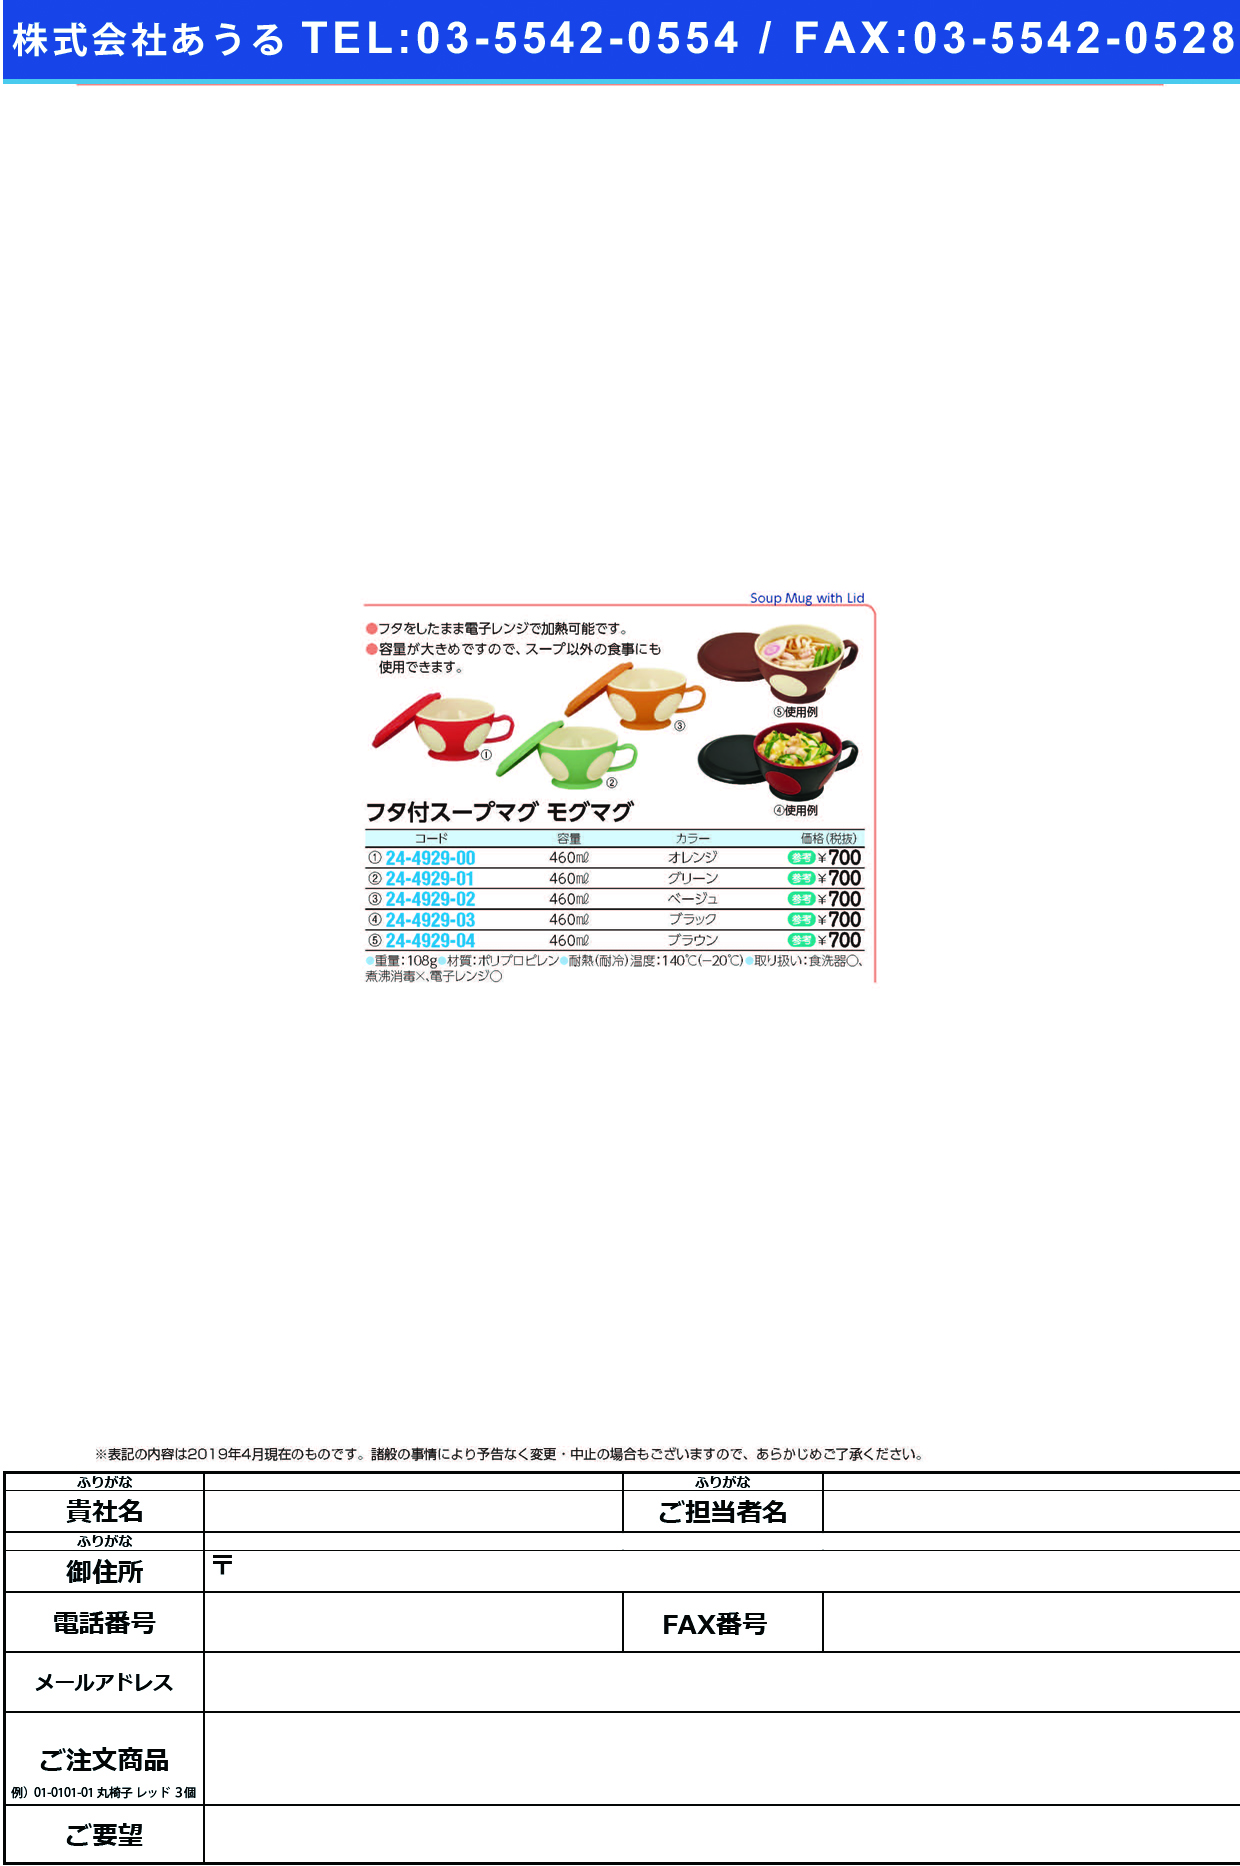 (24-4929-00)フタ付スープマグモグマグ ｵﾚﾝｼﾞ(460ML) ﾌﾀﾂｷｽｰﾌﾟﾏｸﾞﾓｸﾞﾏｸﾞ【1個単位】【2019年カタログ商品】